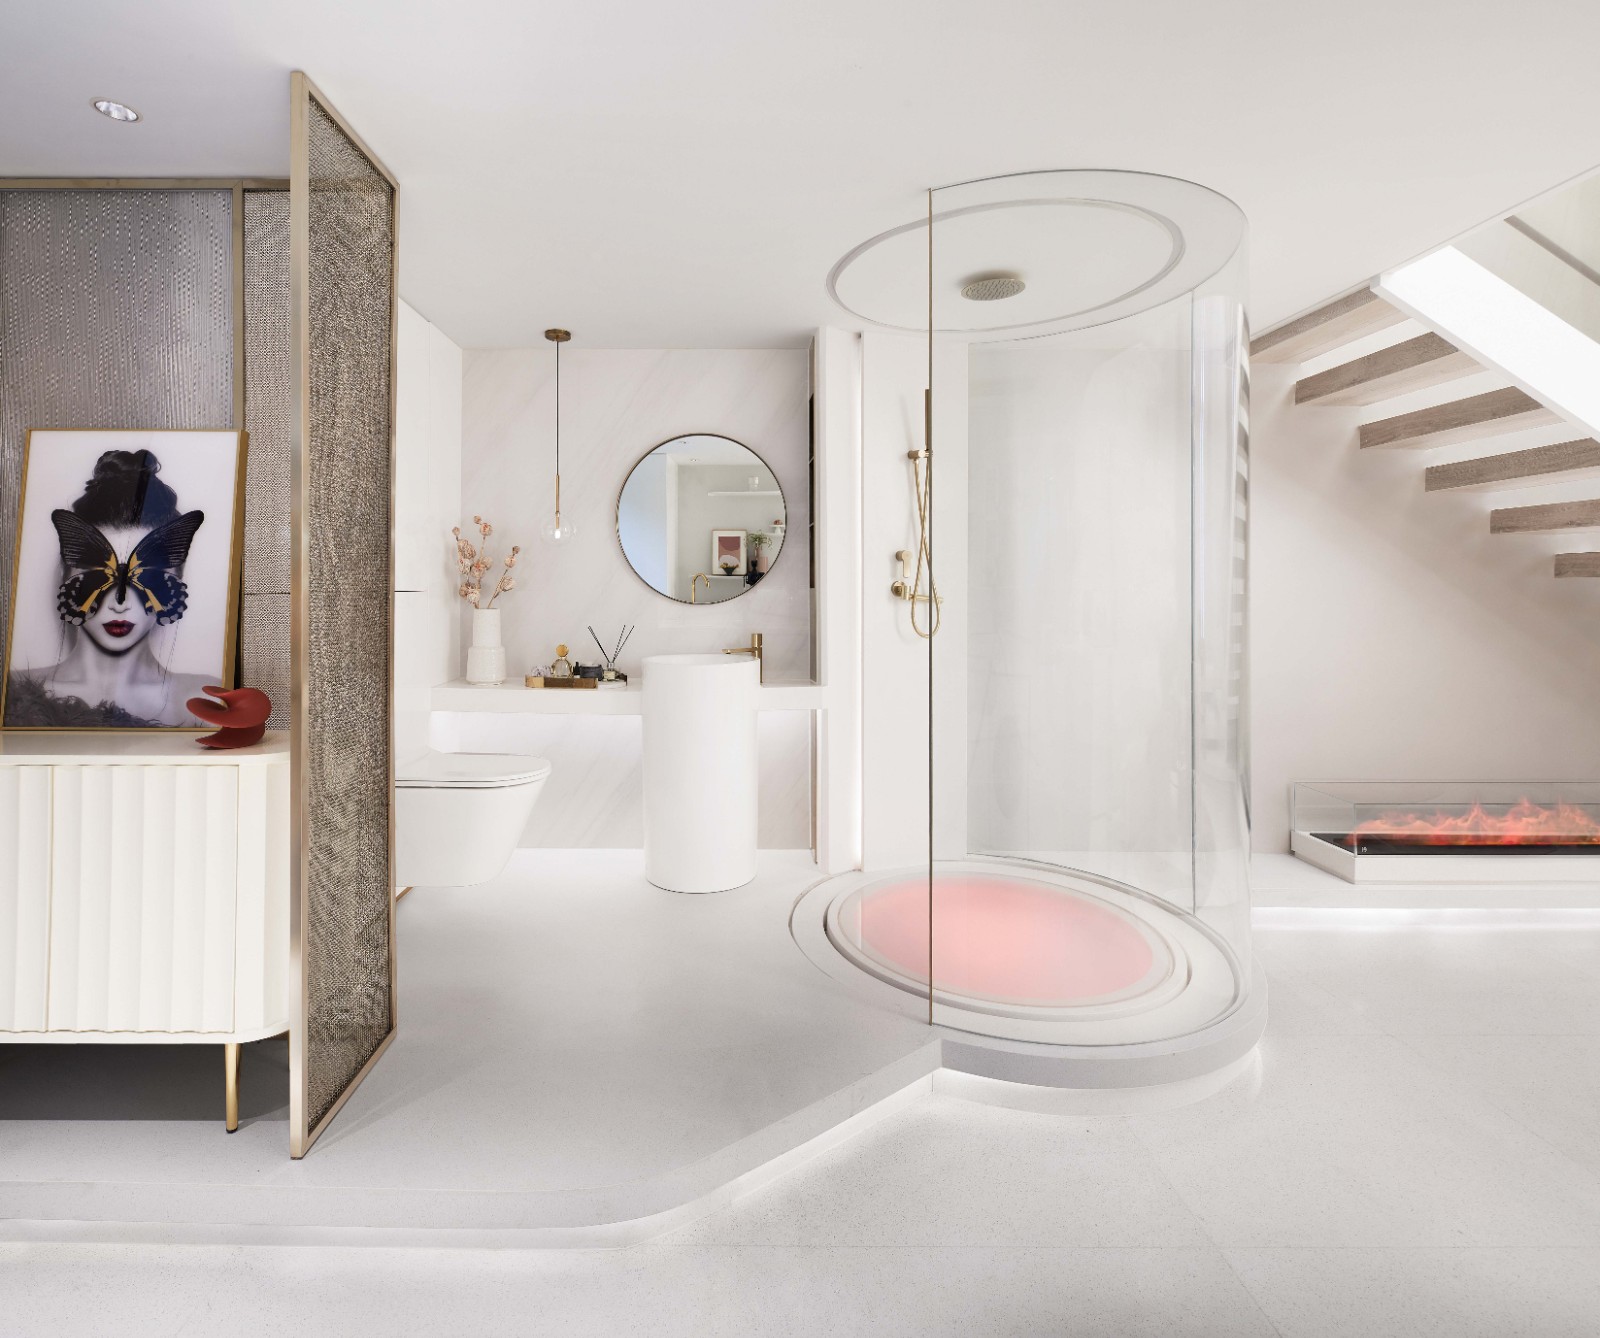 現代輕奢風格公寓室內設計家裝案例-衛生間